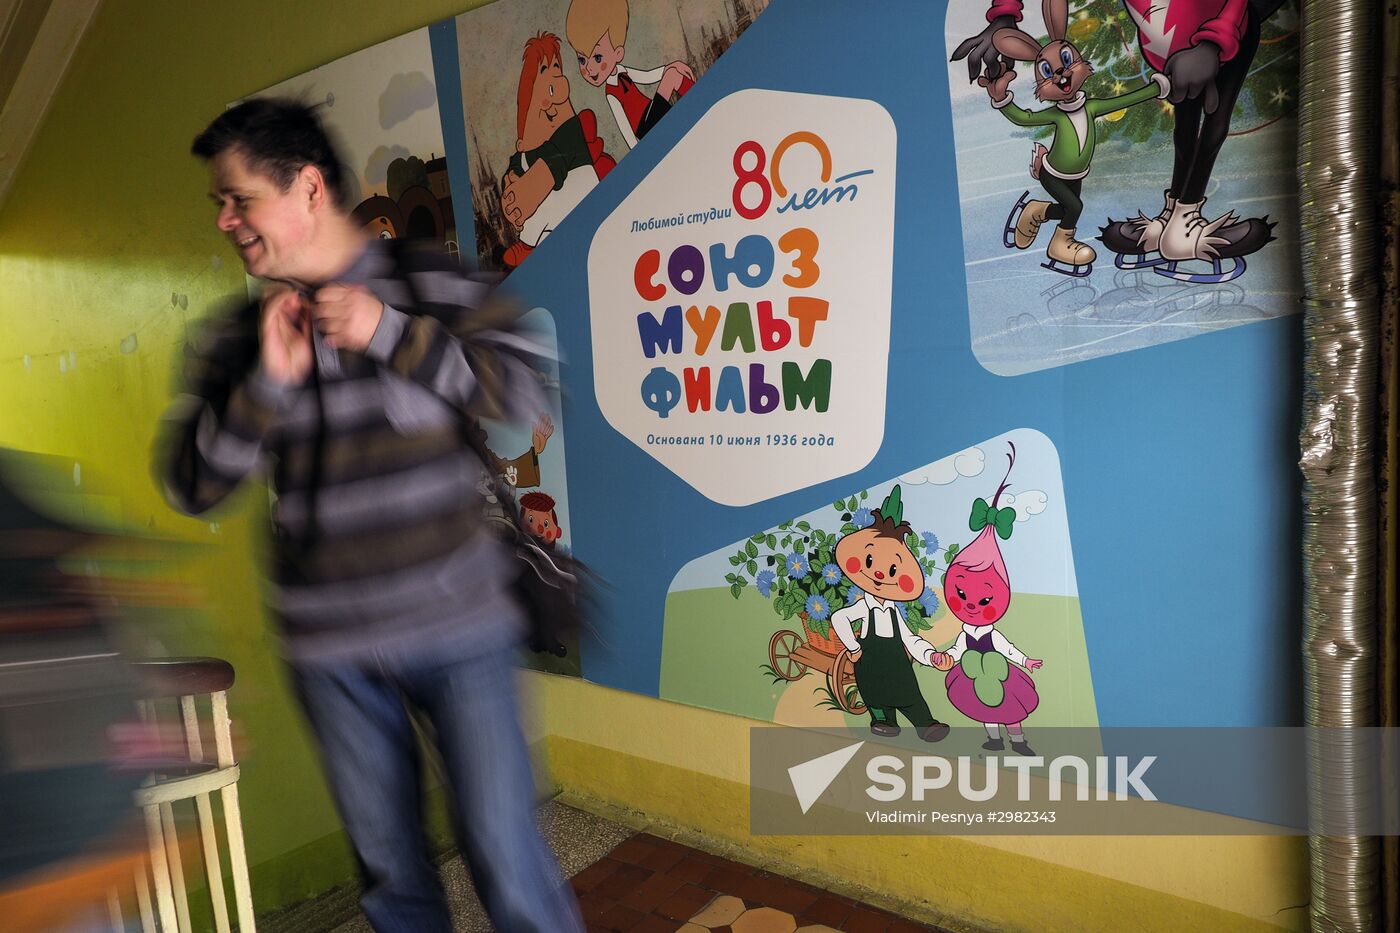 Soyuzmultfilm animation studio